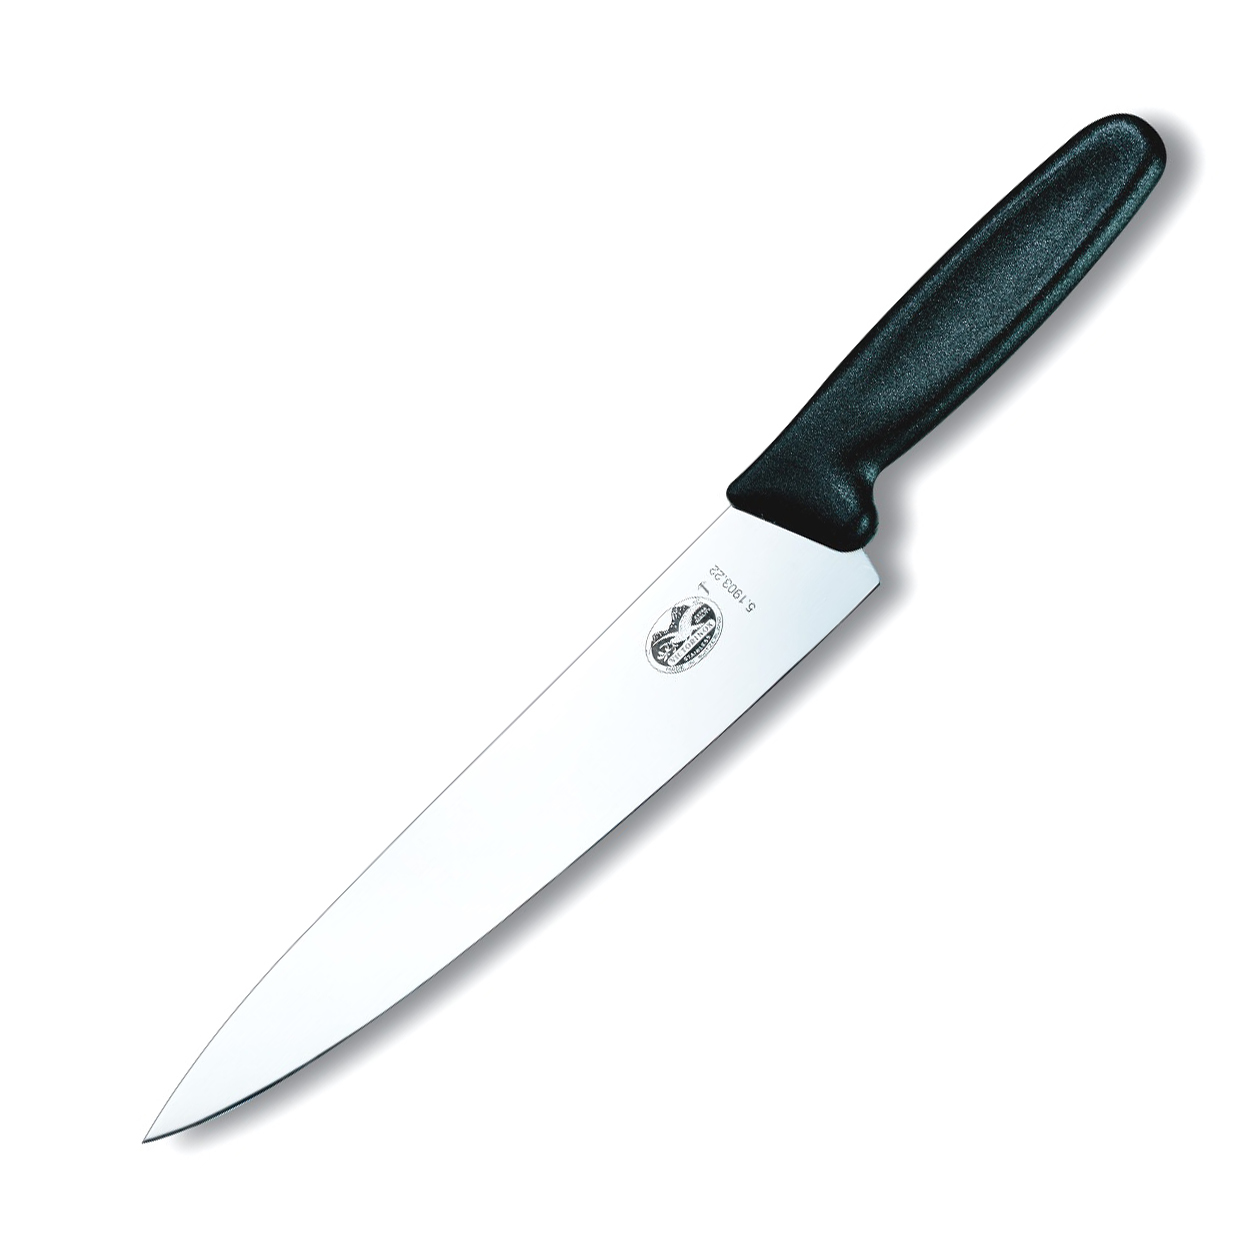 Поварской кухонный шеф нож Victorinox 22 см, сталь X50CrMoV15, рукоять полипропилен, черный